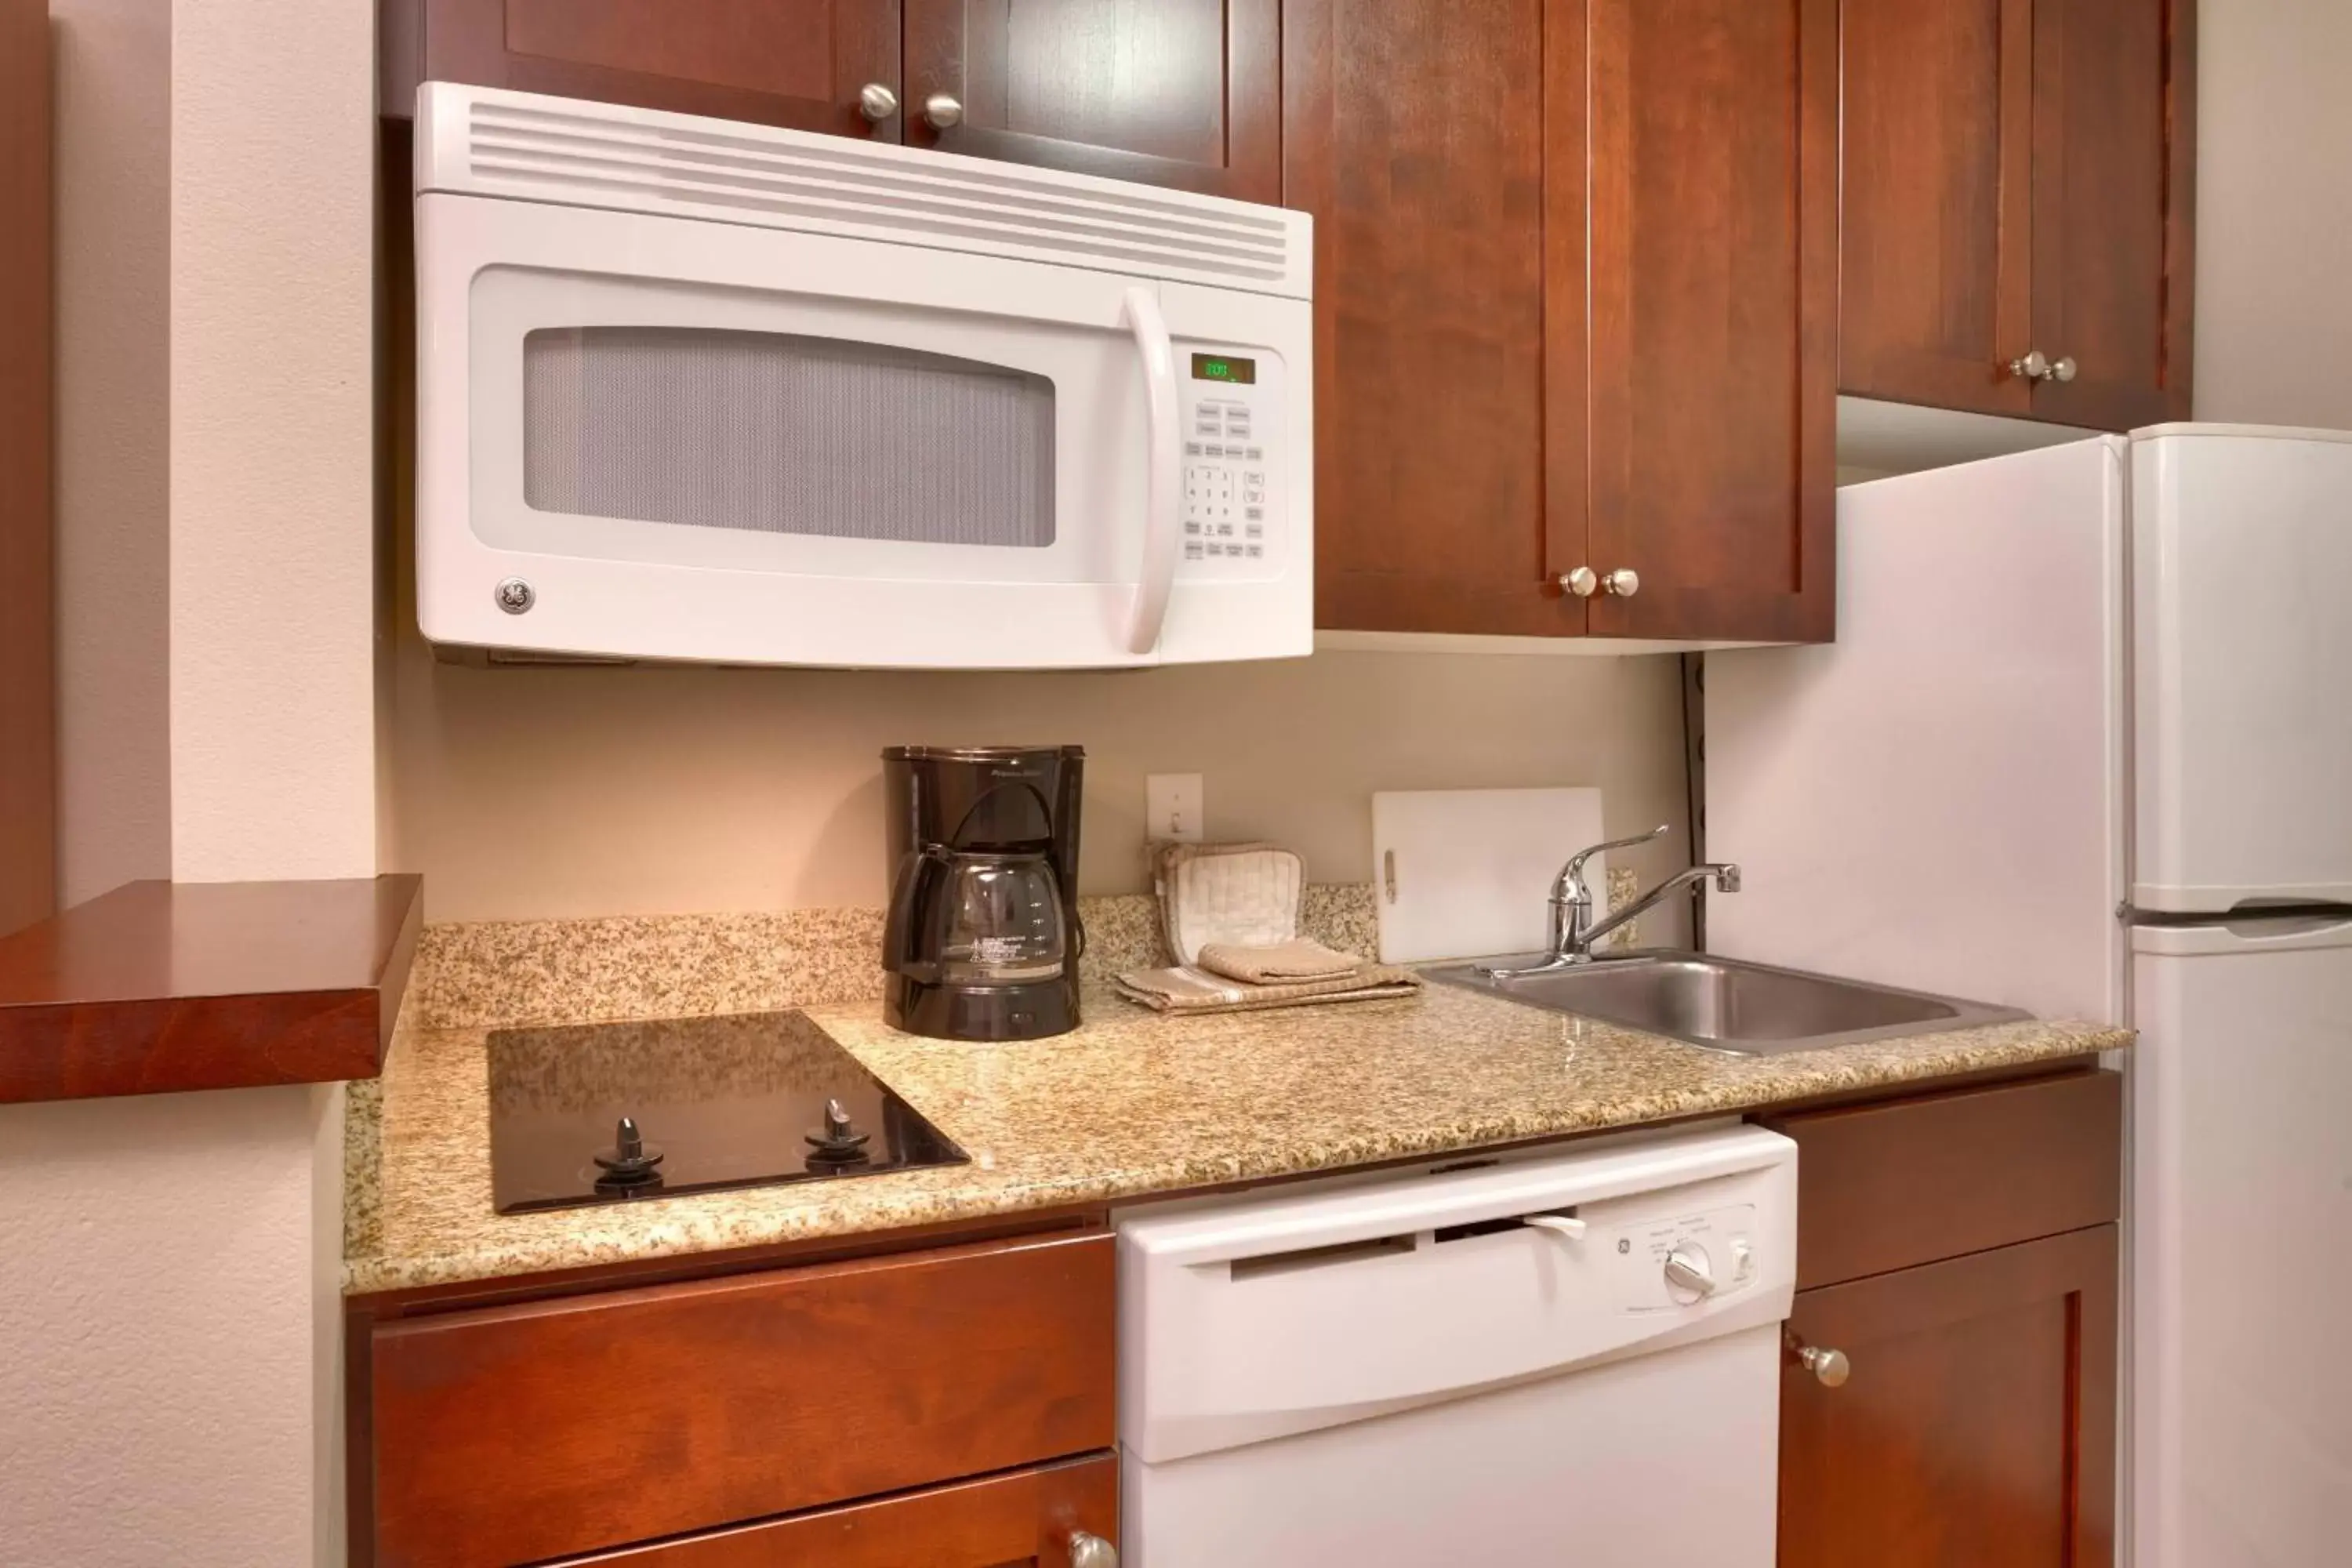 Kitchen or kitchenette, Kitchen/Kitchenette in TownePlace Suites Boise West / Meridian